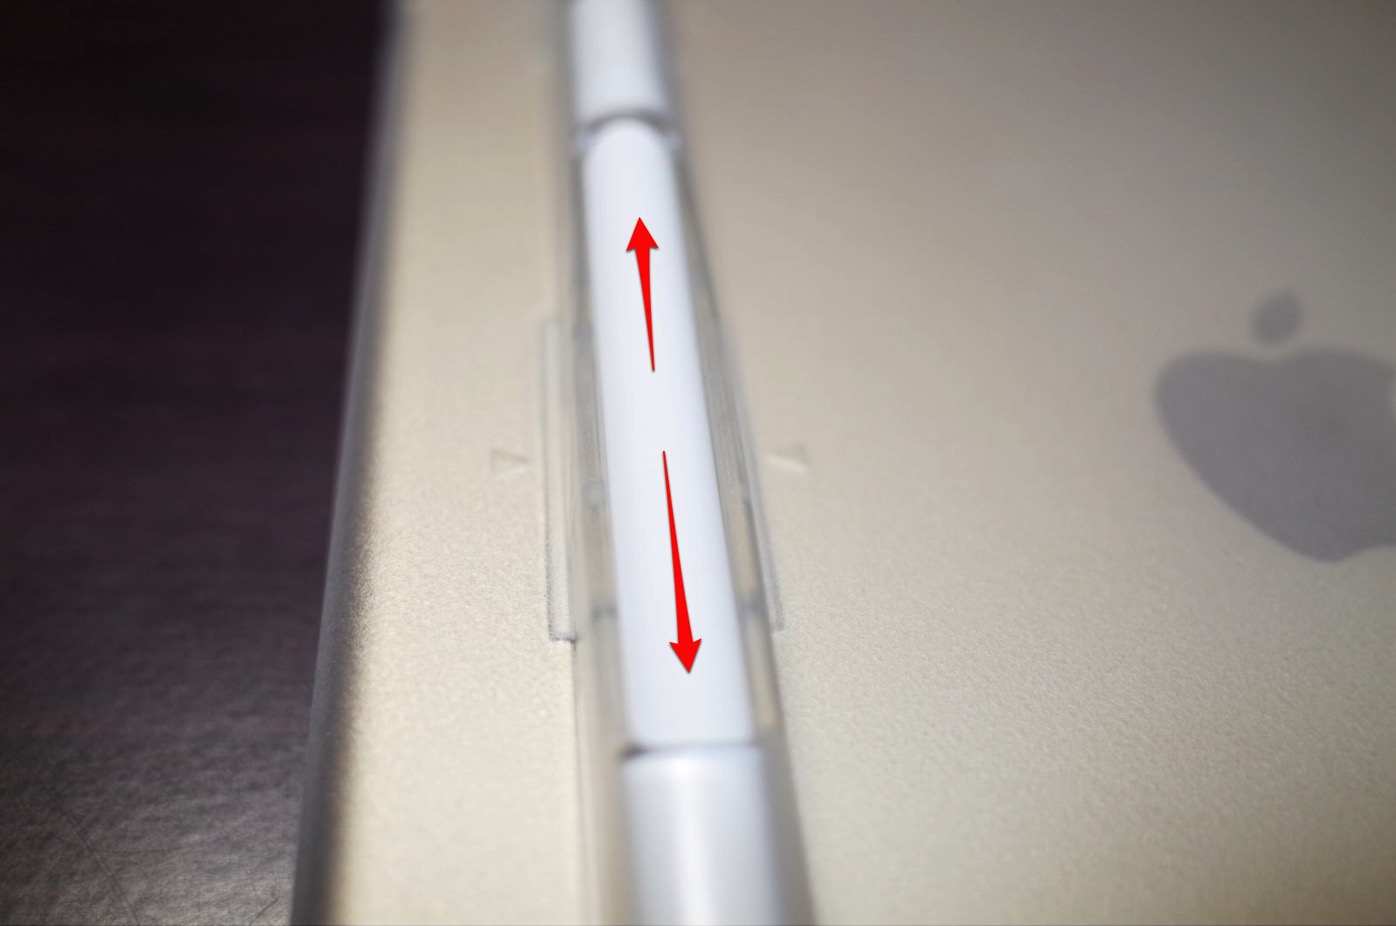 iPad Pro 10.5 ケース SwitchEasy CoverBuddy ハード バック カバー Apple Pencil 収納付き 純正 スマートキーボード 対応-9